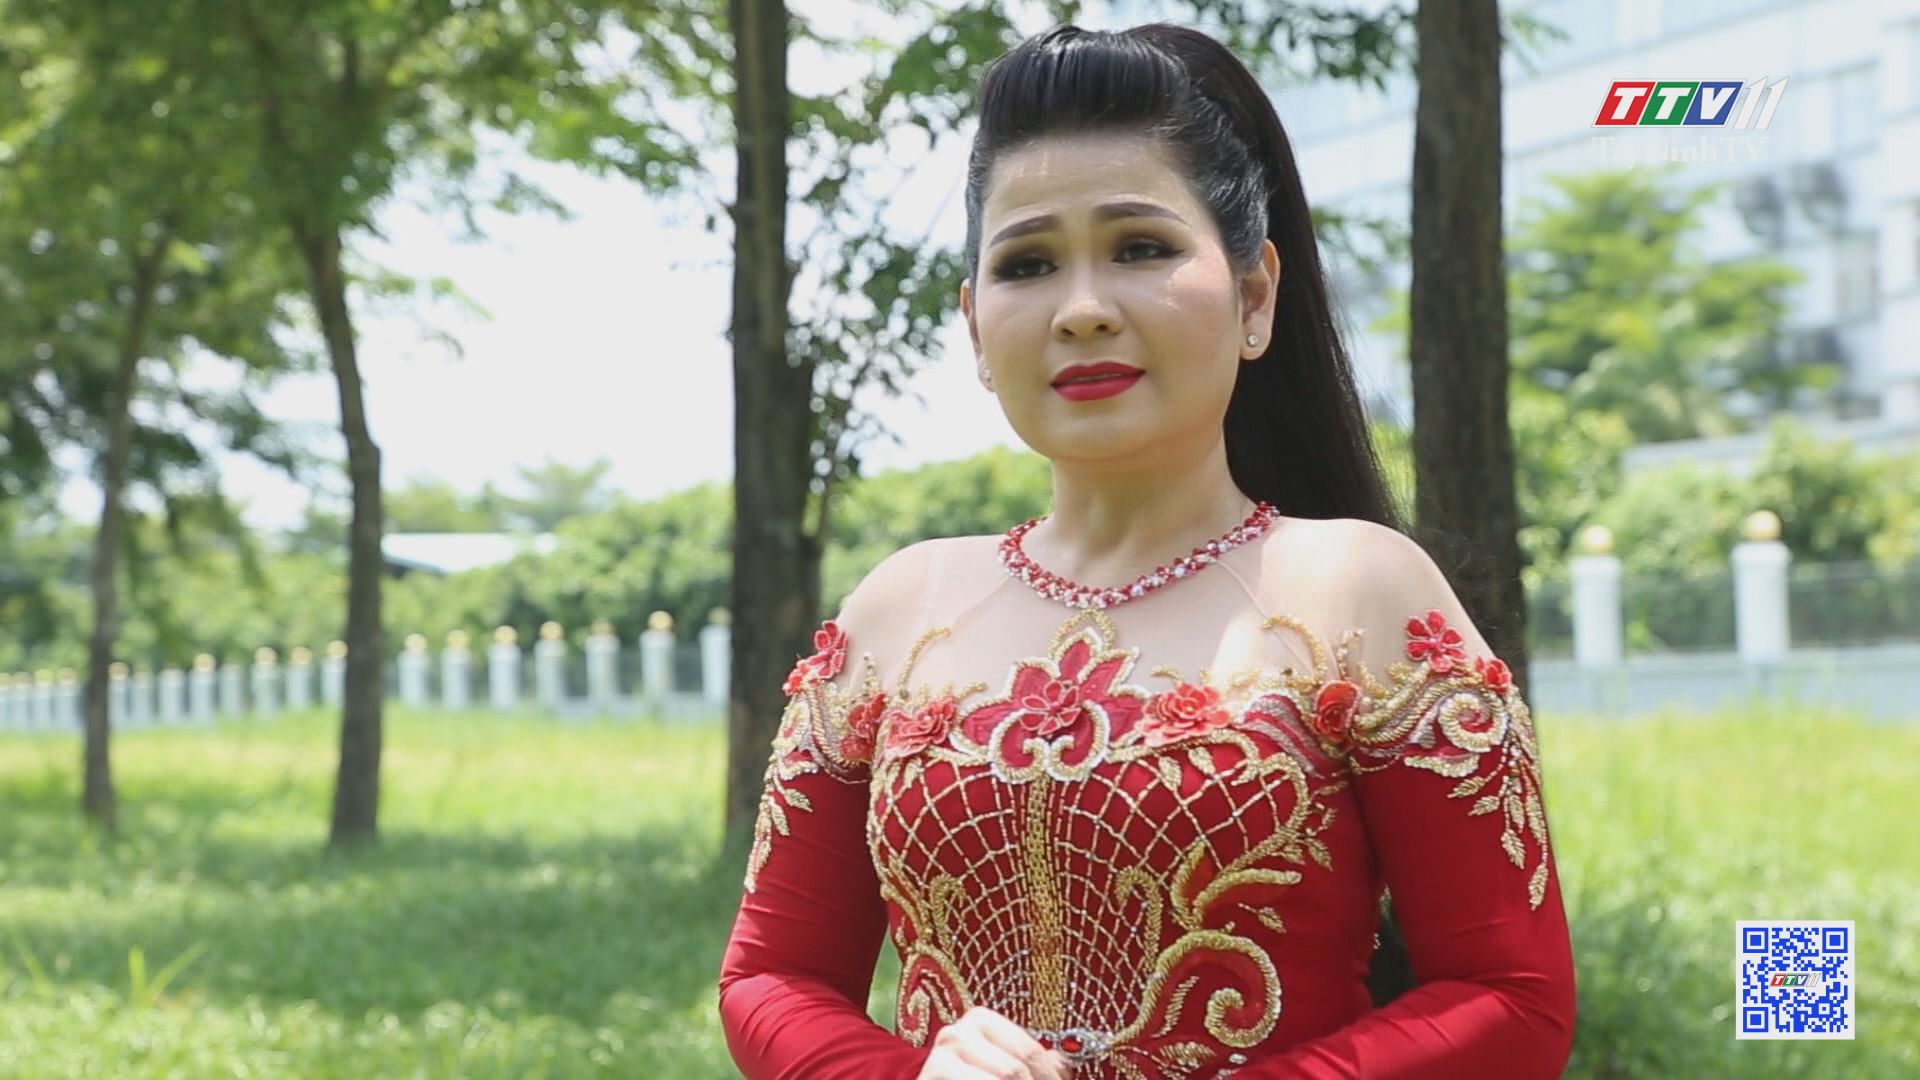 Tây Ninh một miền nhớ | TÌNH CA QUÊ HƯƠNG TÂY NINH | TayNinhTV